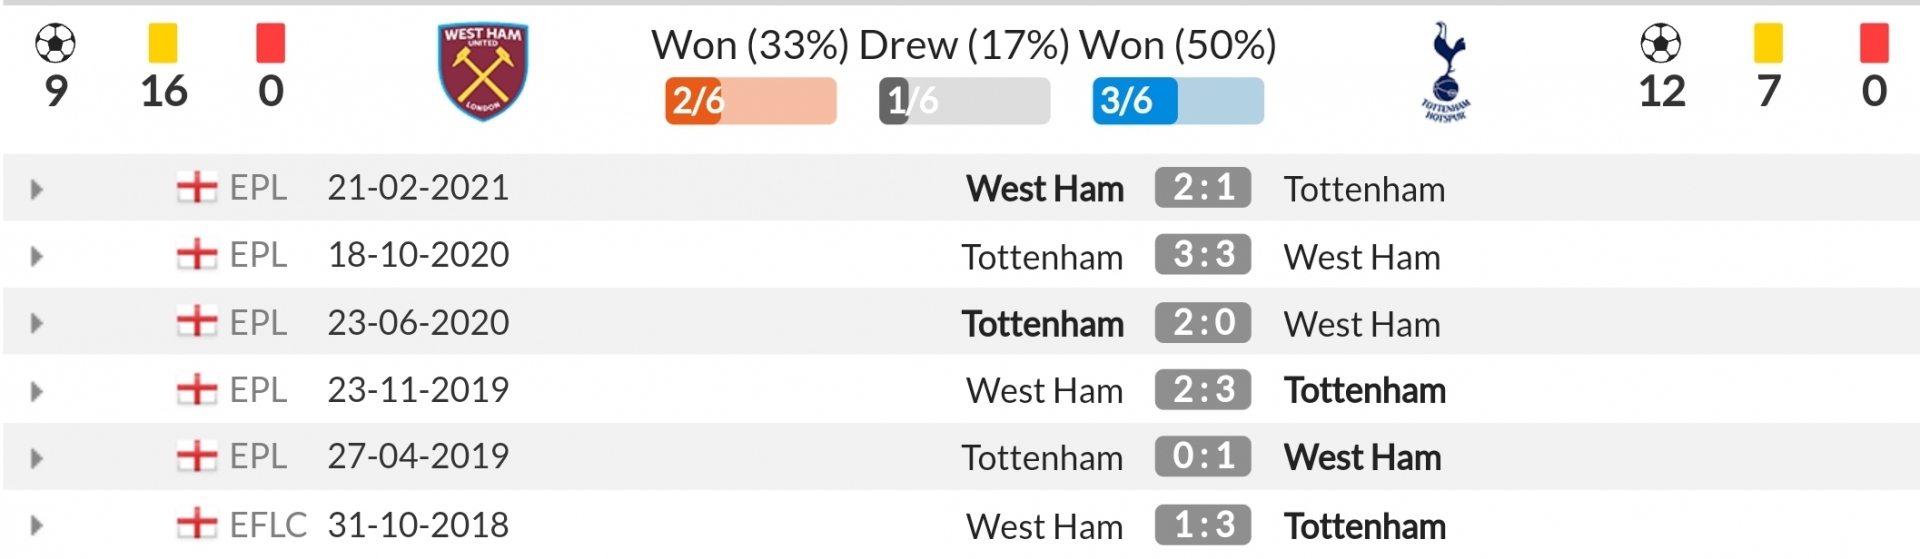 Nhận định West Ham vs Tottenham (20h00, 24/10) vòng 9 Premier League: Hấp dẫn derby London  4